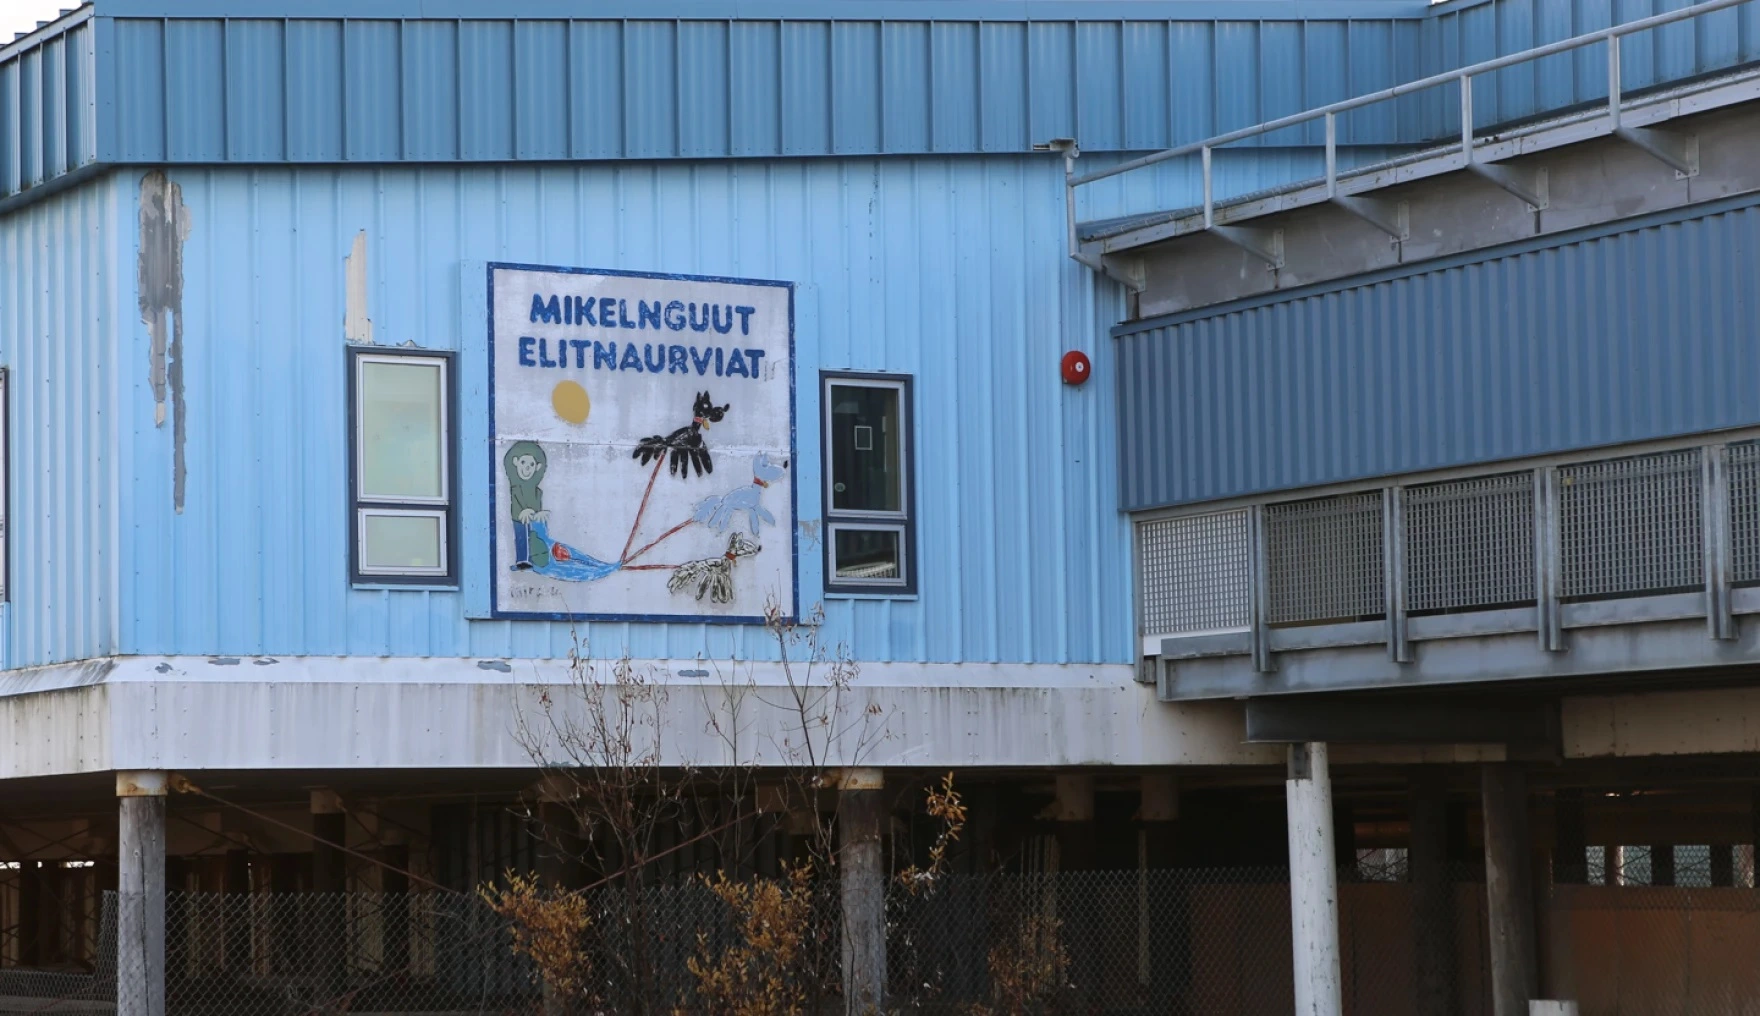 Funding Challenges for Alaska Schools
